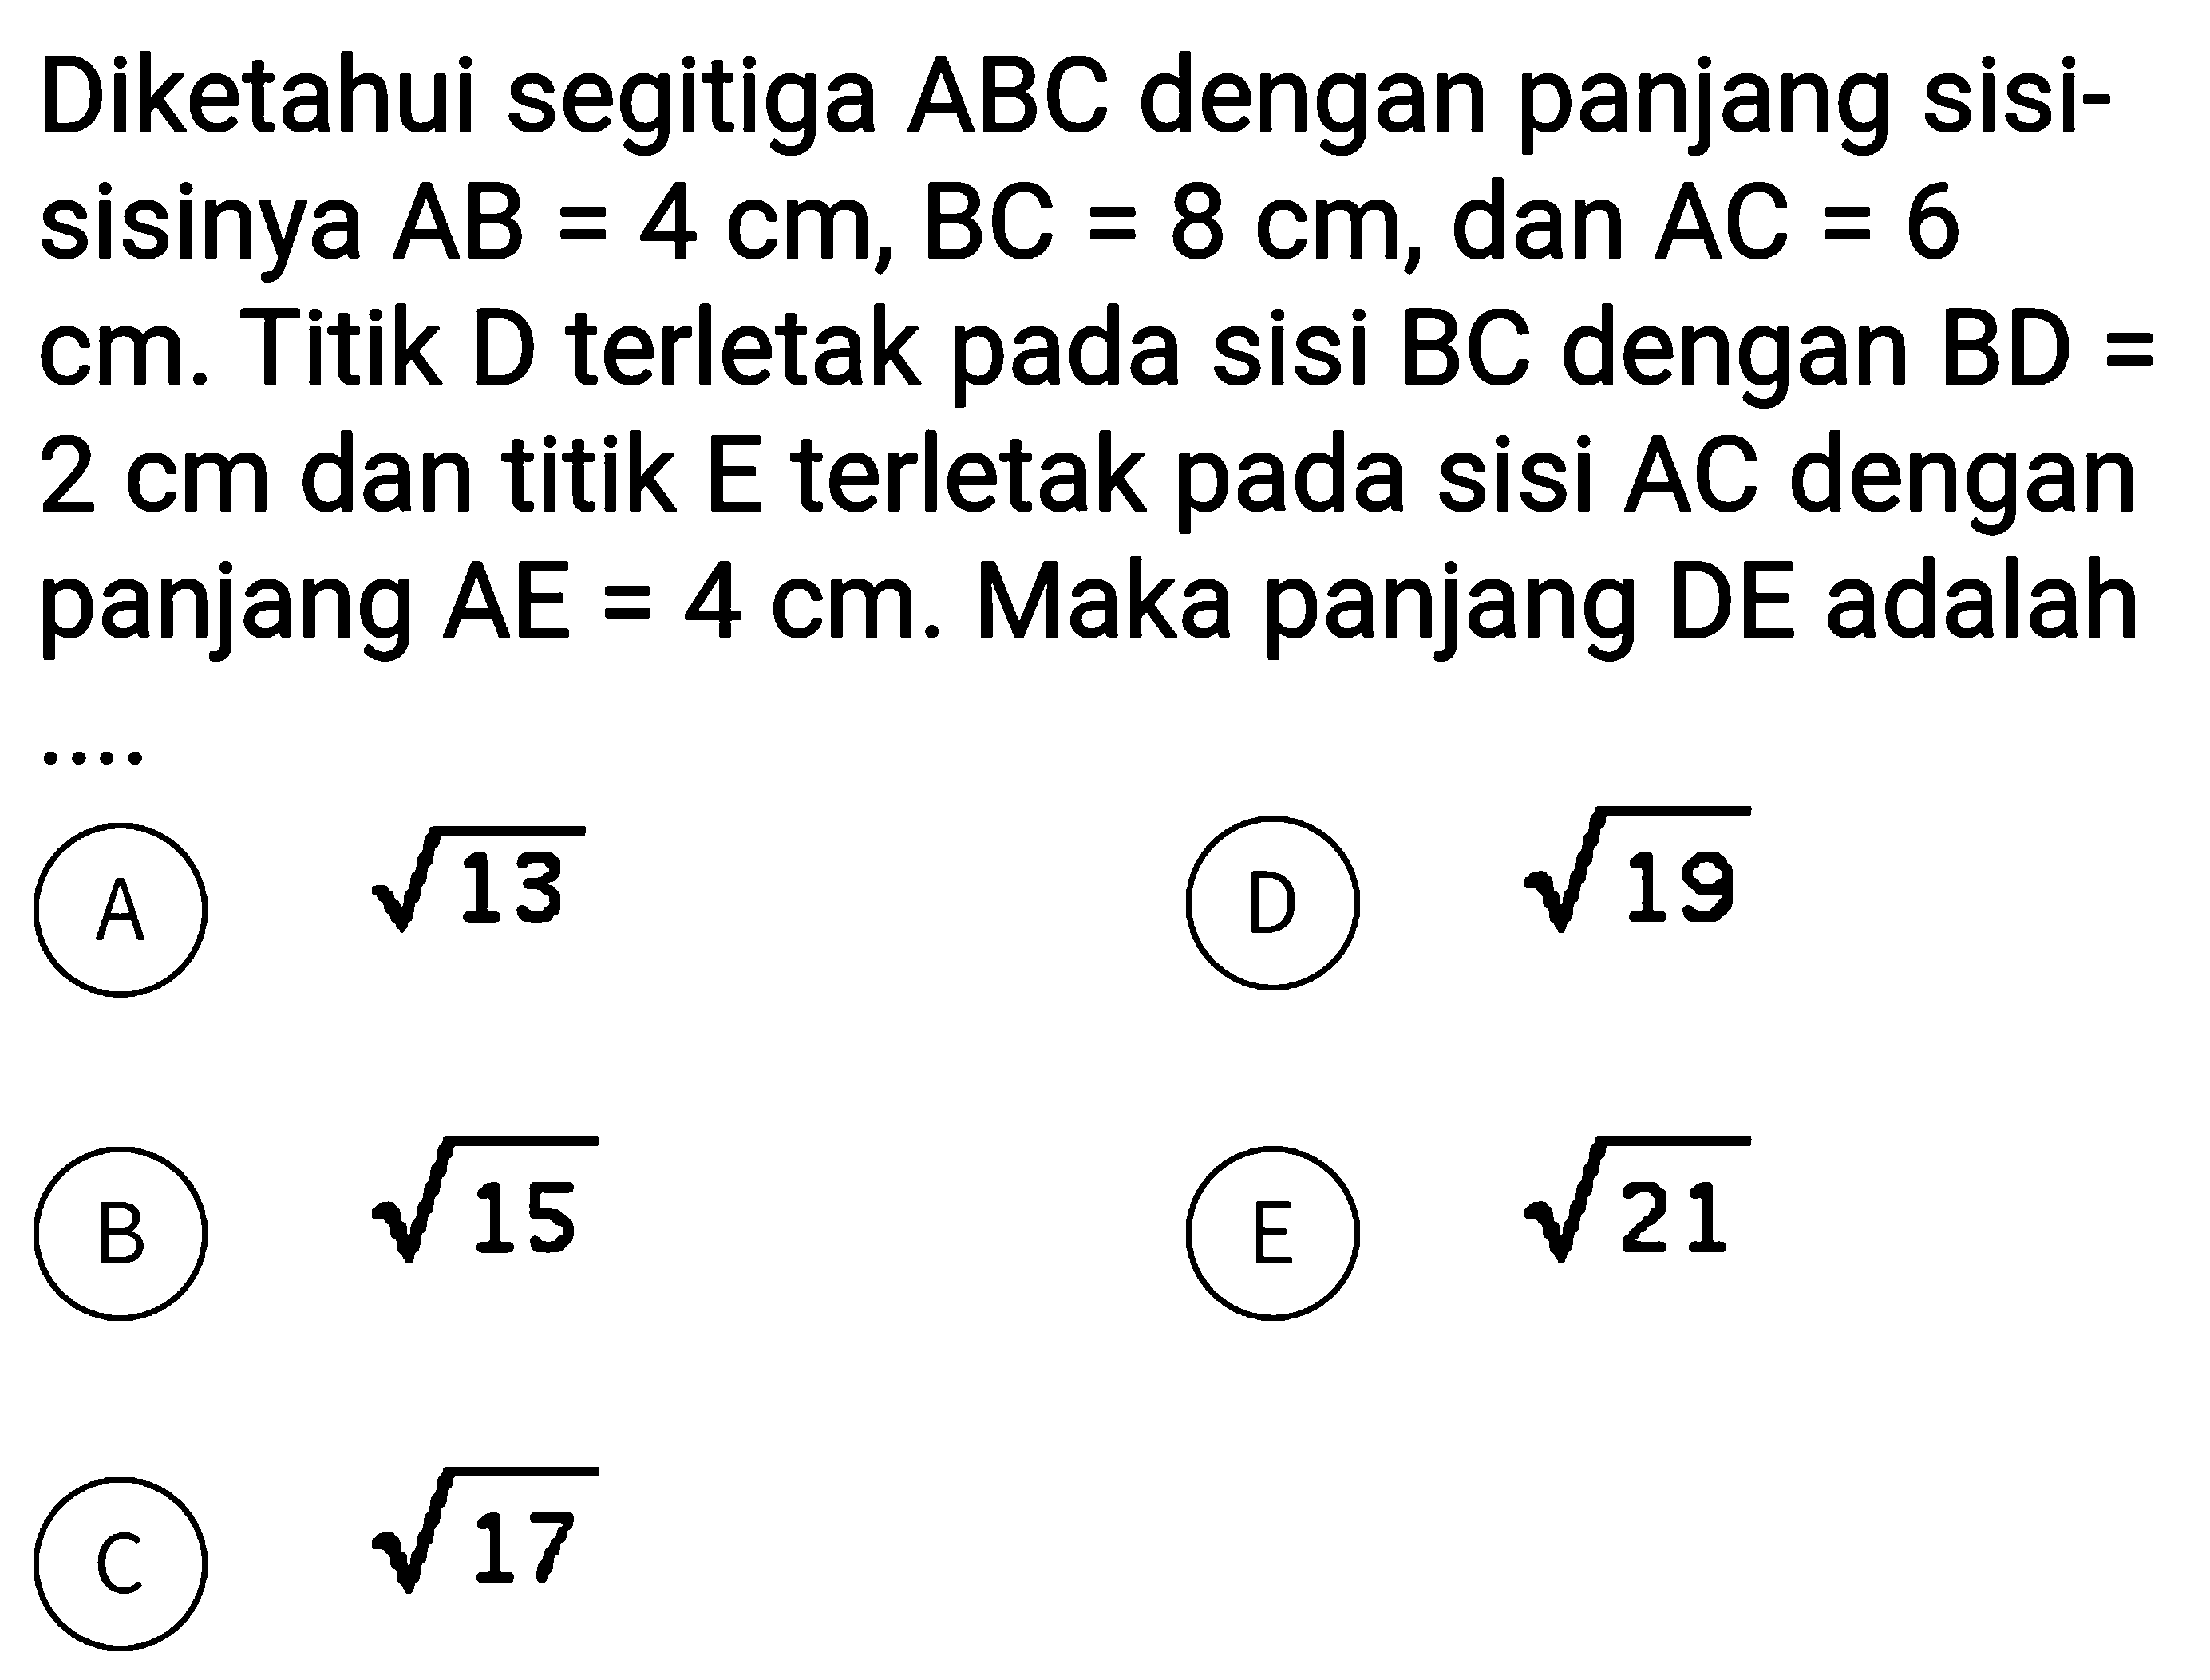 Diketahui segitiga ABC dengan panjang sisi-sisinya AB=4 cm, BC=8 cm, dan AC=6 cm. Titik D terletak pada sisi BC dengan BD=2 cm dan titik E terletak pada sisi AC dengan panjang AE=4 cm. Maka panjang DE adalah ....